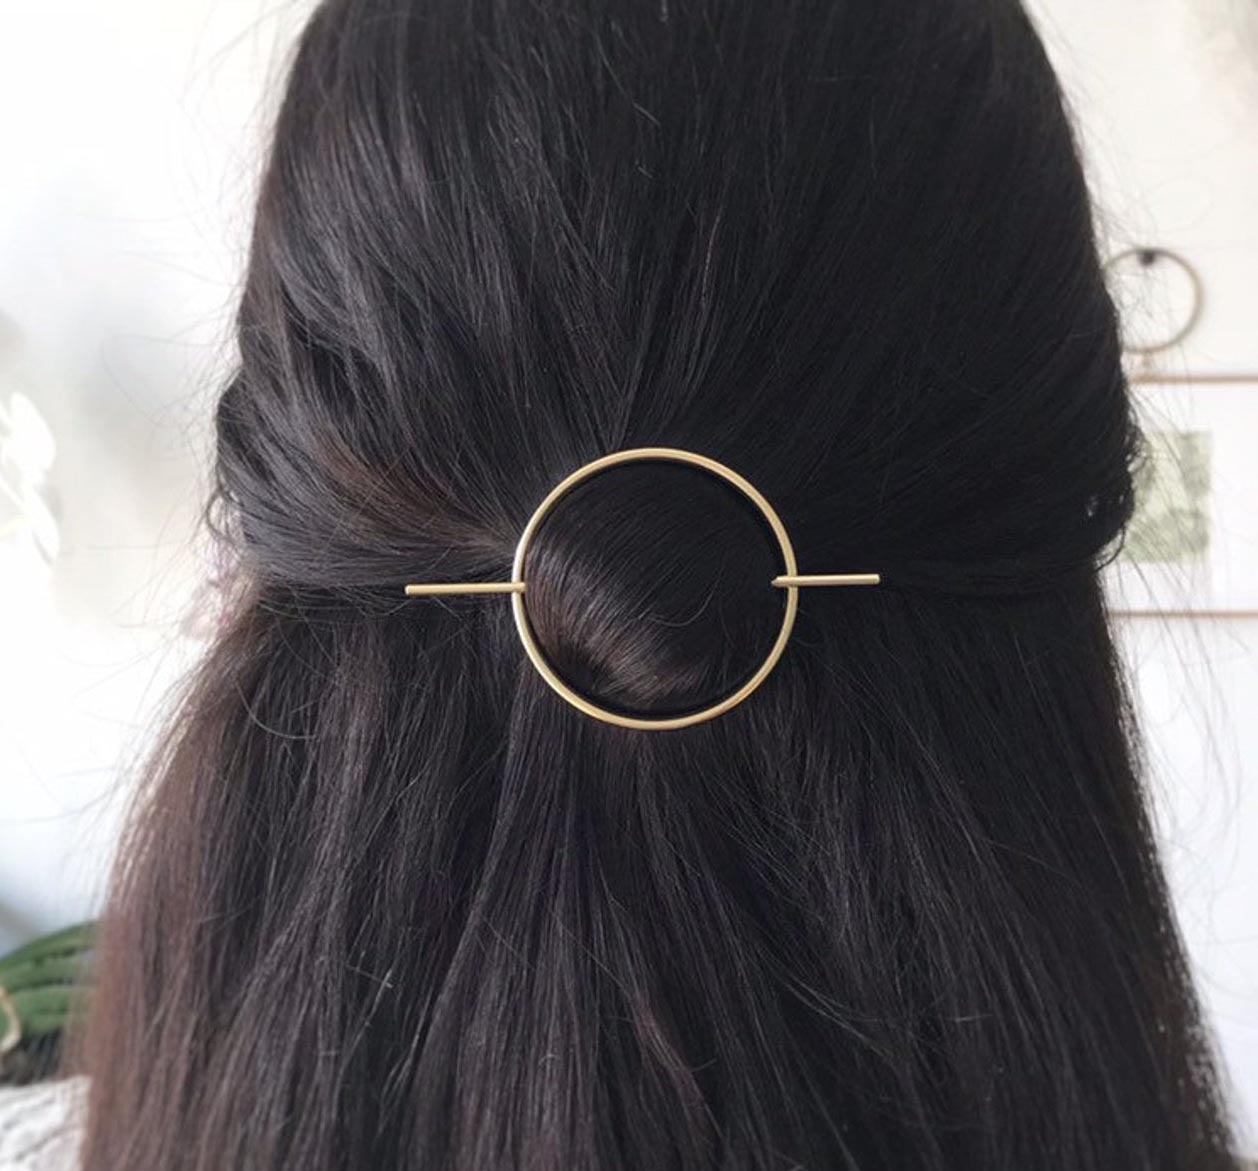 Идея подарка - Золотая заколка для волос